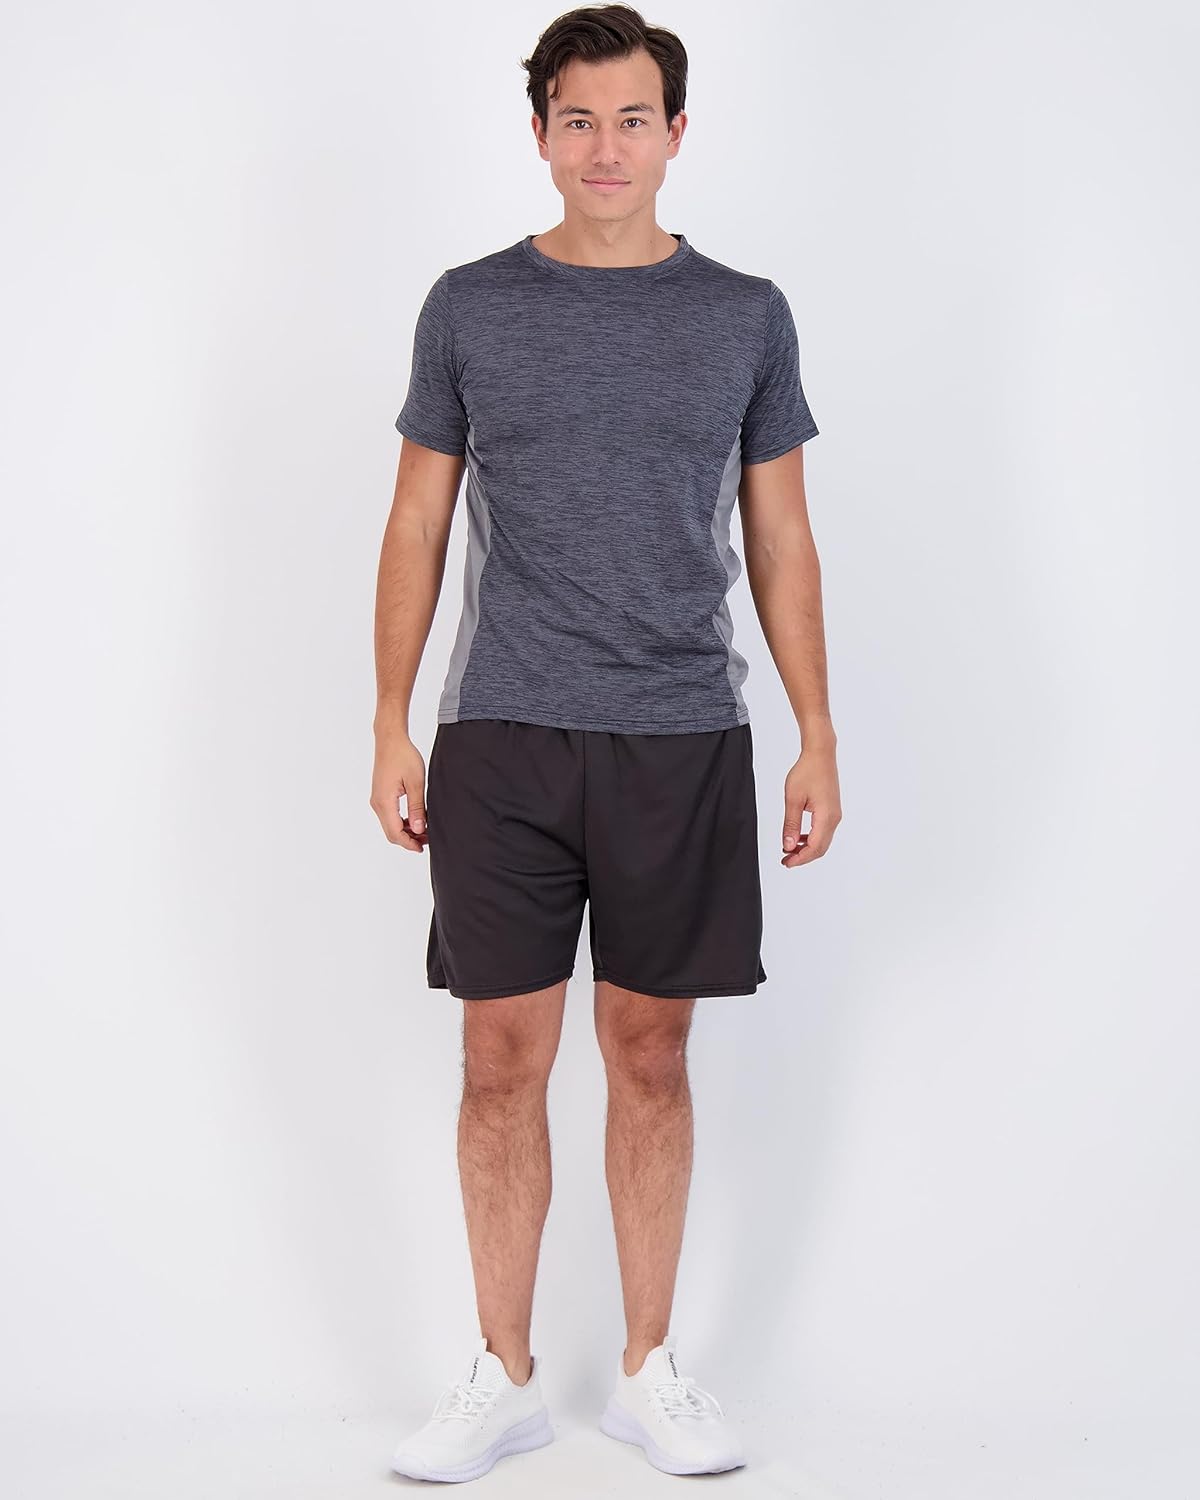 Real Essentials 3 Pack: Men's Tech Fleece Ultra-Soft Warm Jogger